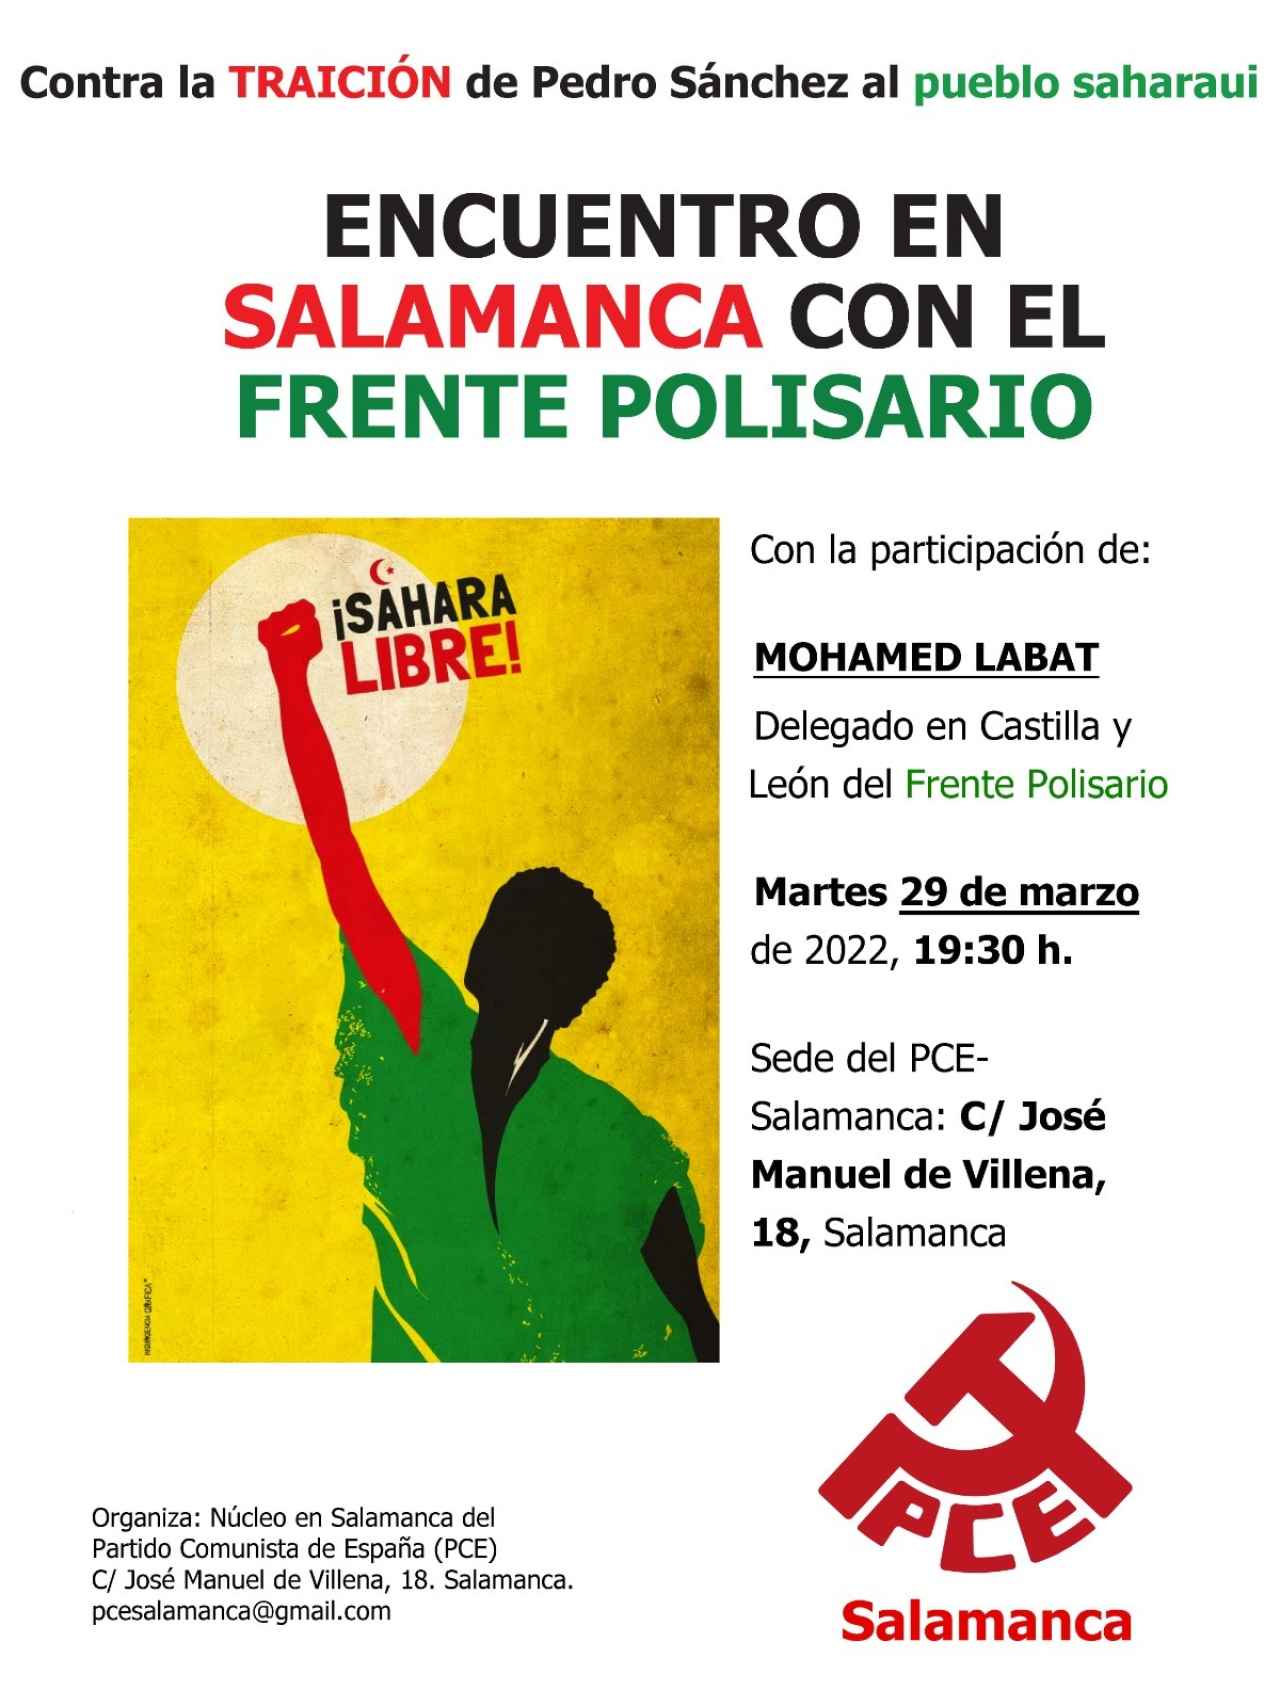 Cartel del encuentro entre el PCE-Salamanca y el Frente Polisario